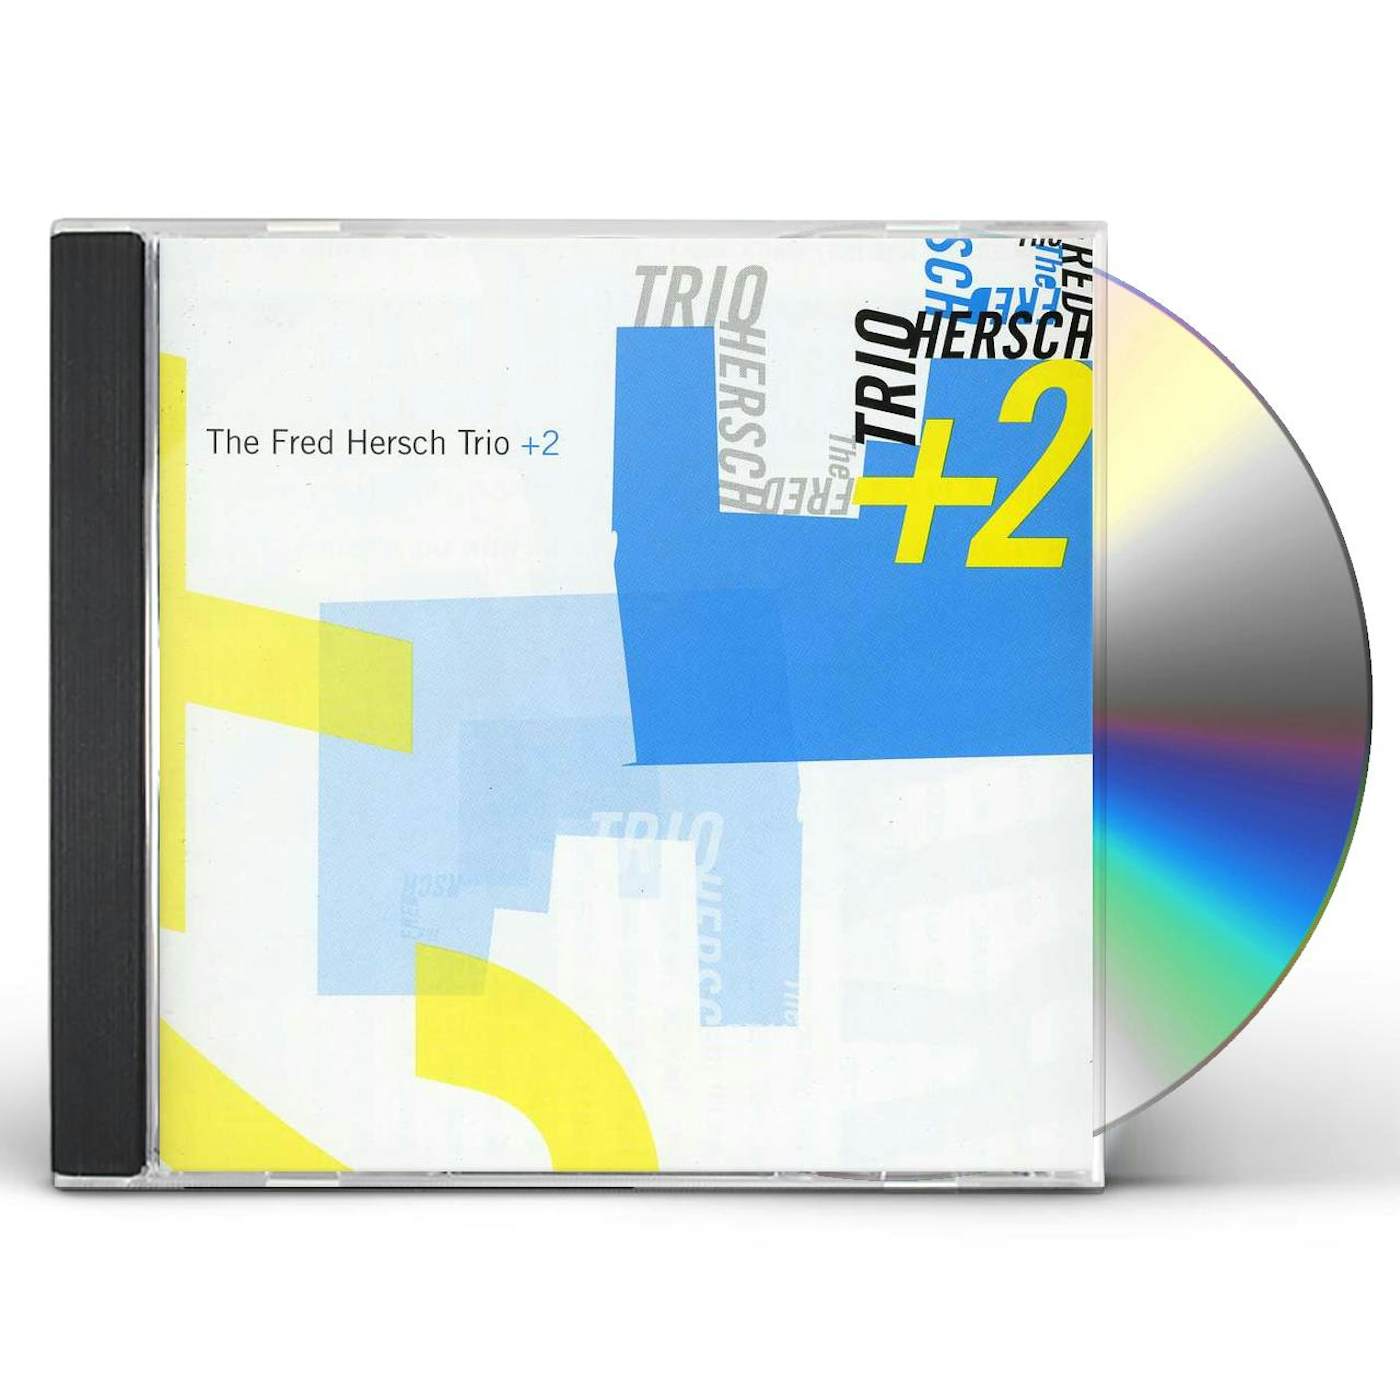 FRED HERSCH TRIO + 2 CD